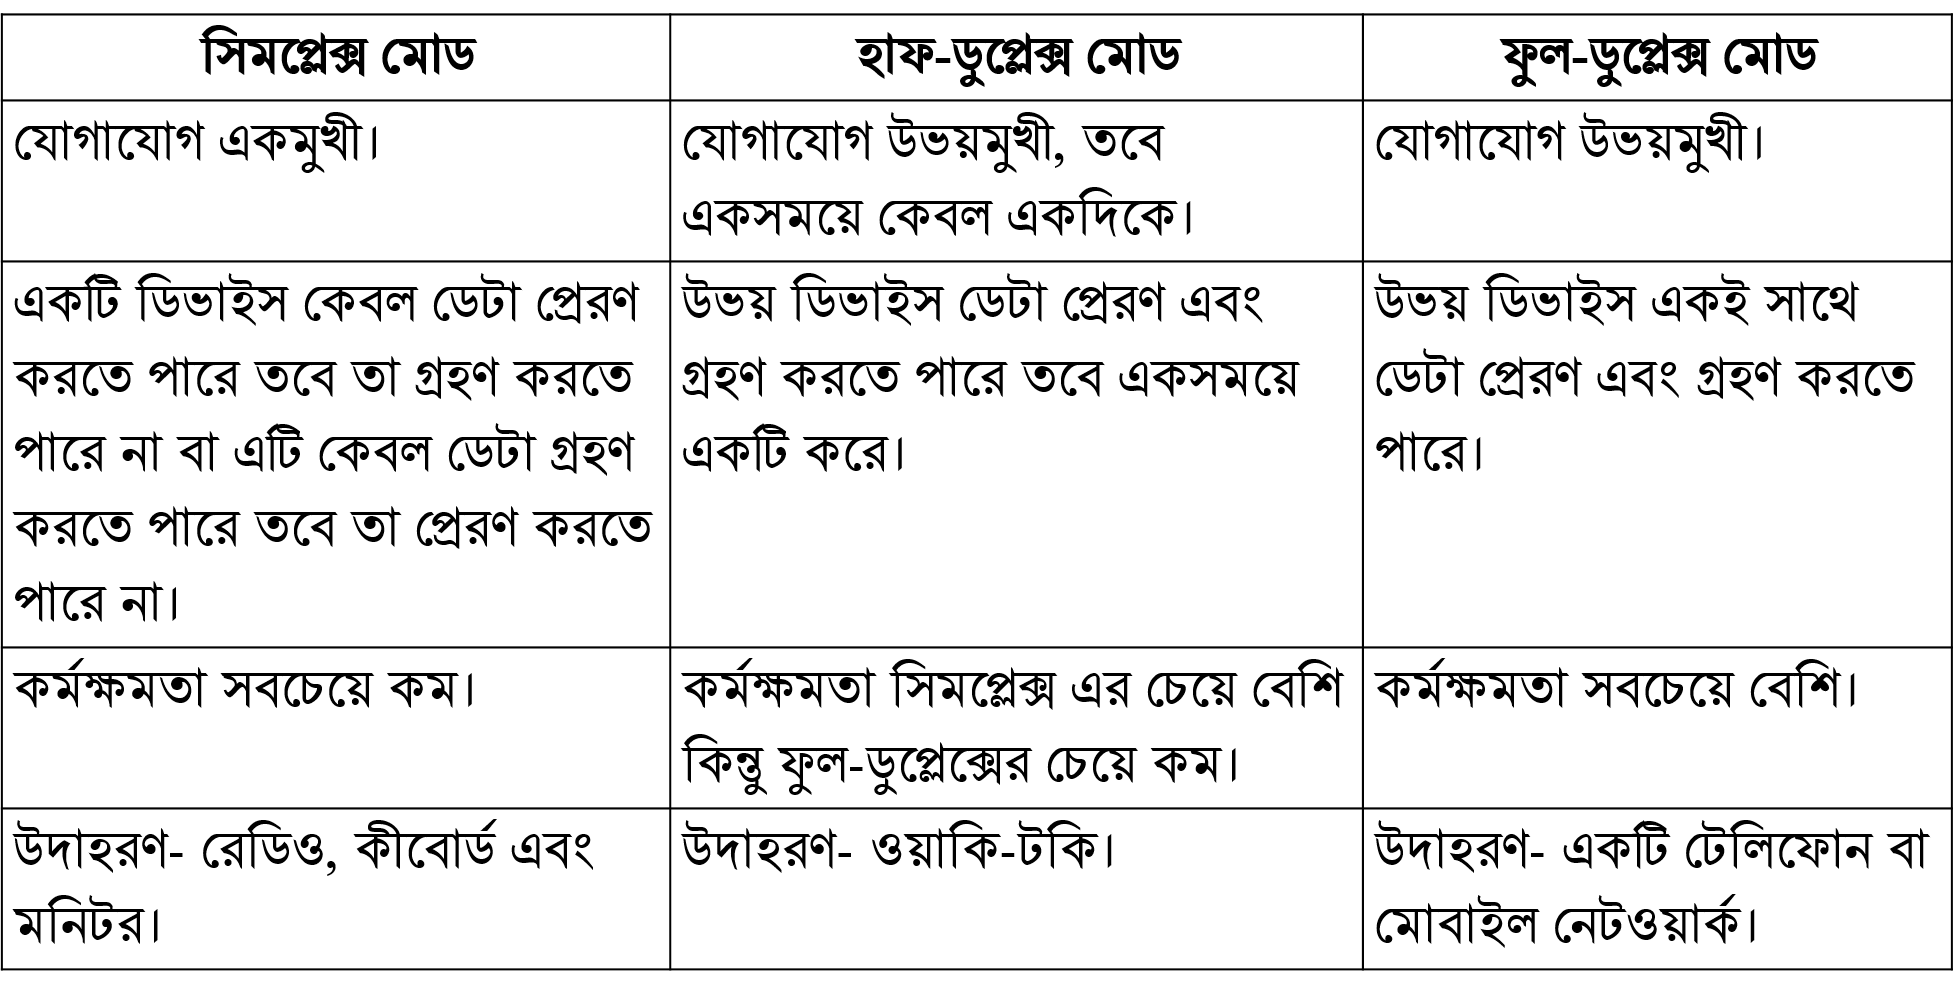 সিমপ্লেক্স, হাফডুপ্লেক্স ও ফুলডুপ্লেক্স এর মধ্যে পার্থক্য